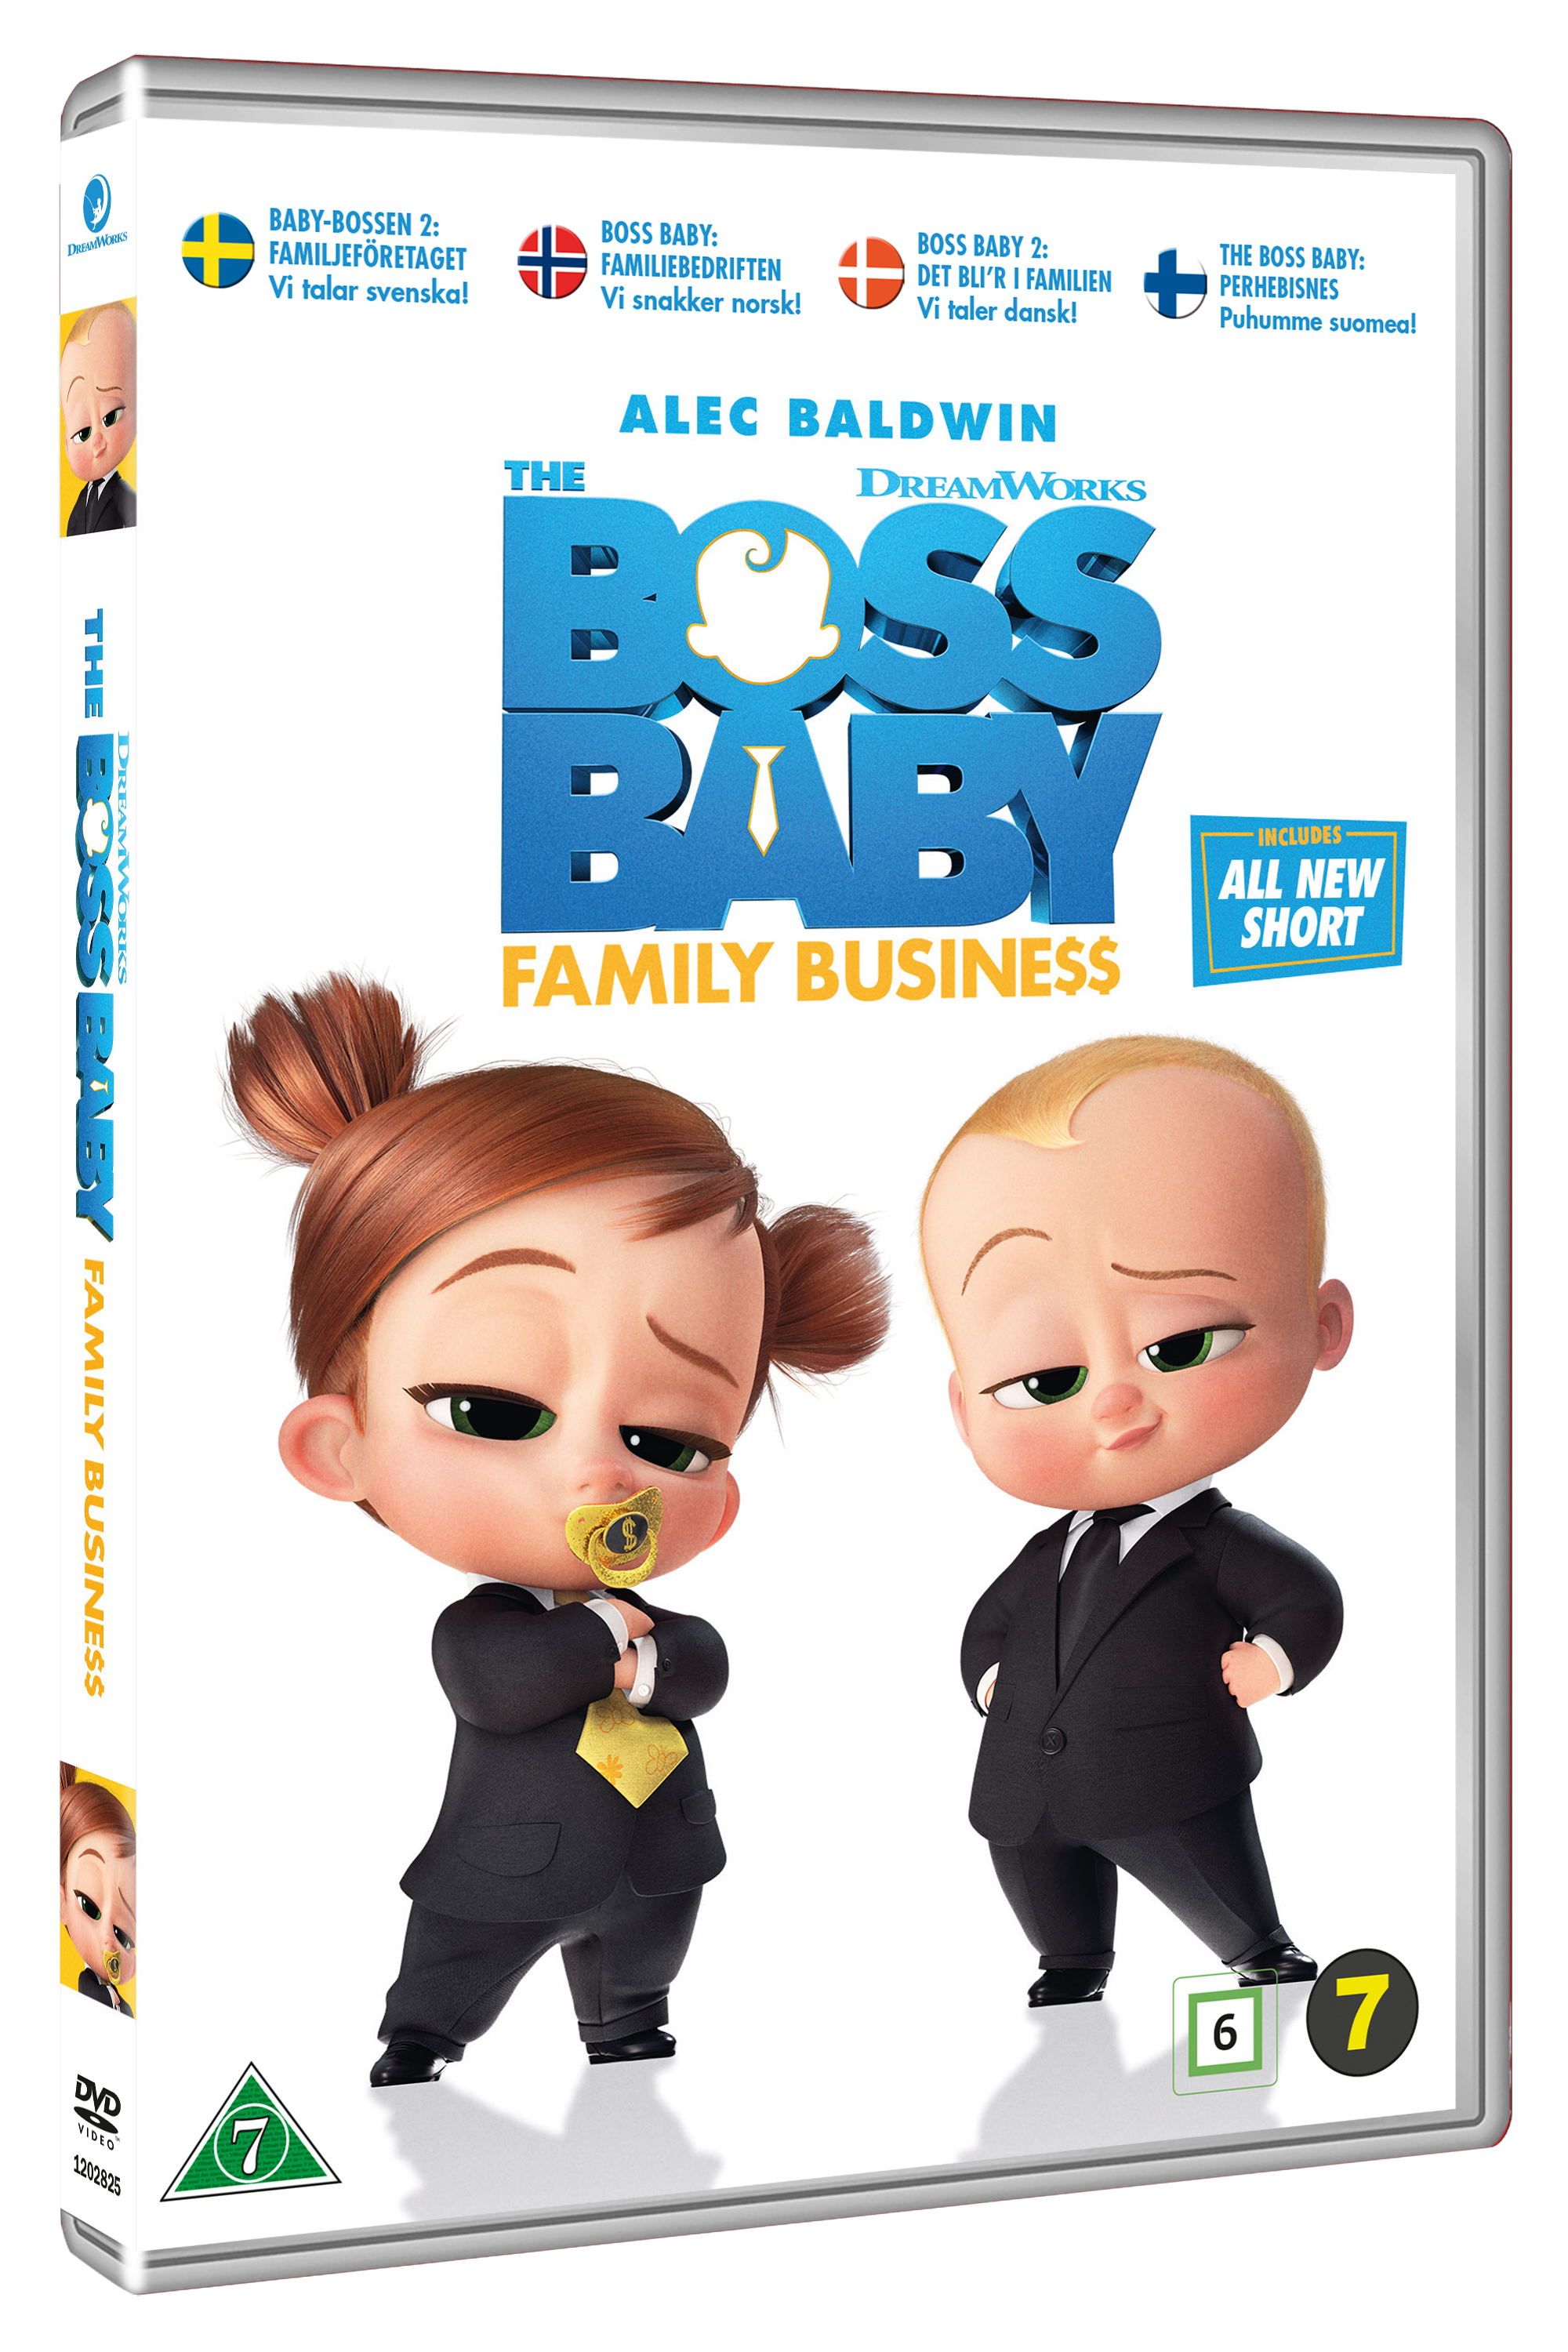 Baby-bossen 2: Familjeföretaget